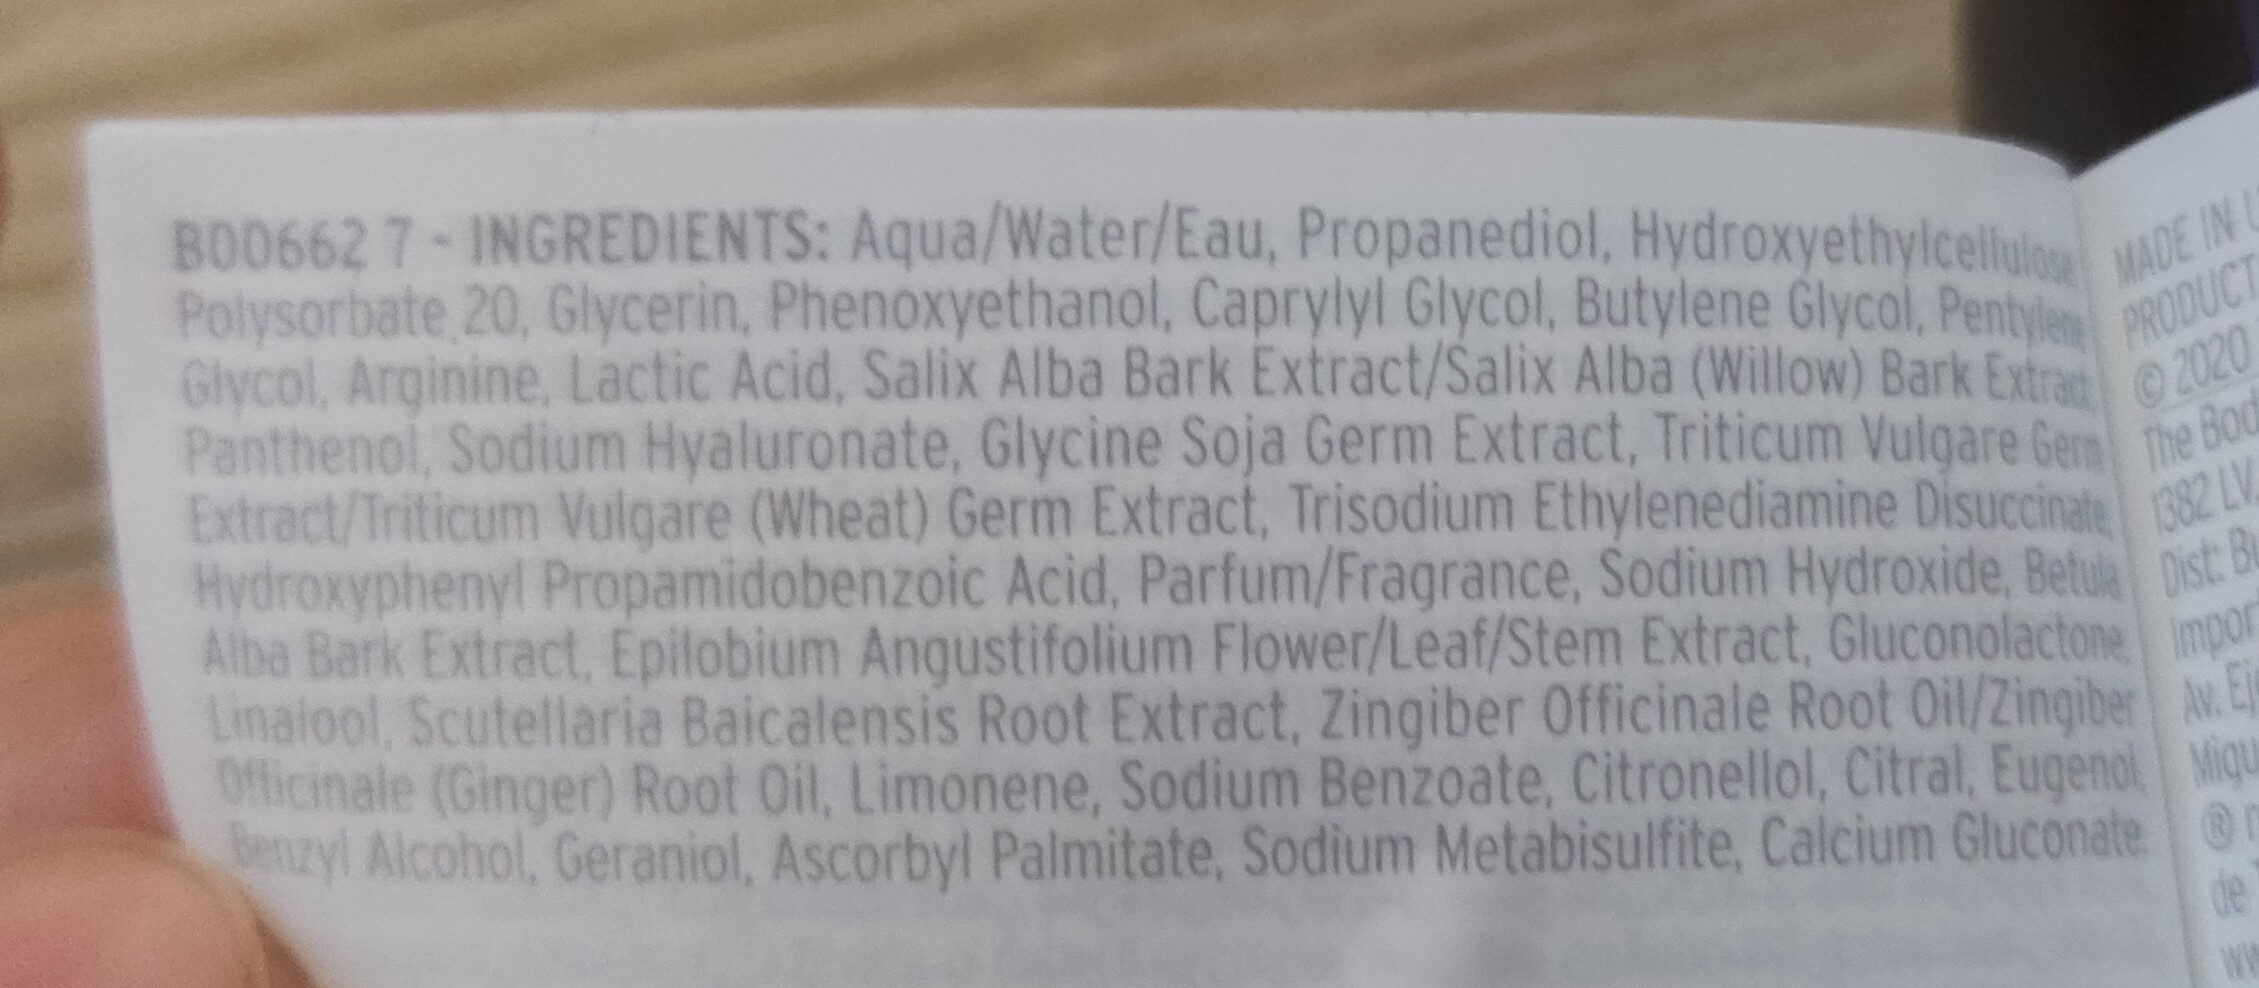 ginger scalp serum - Ingredientes - en